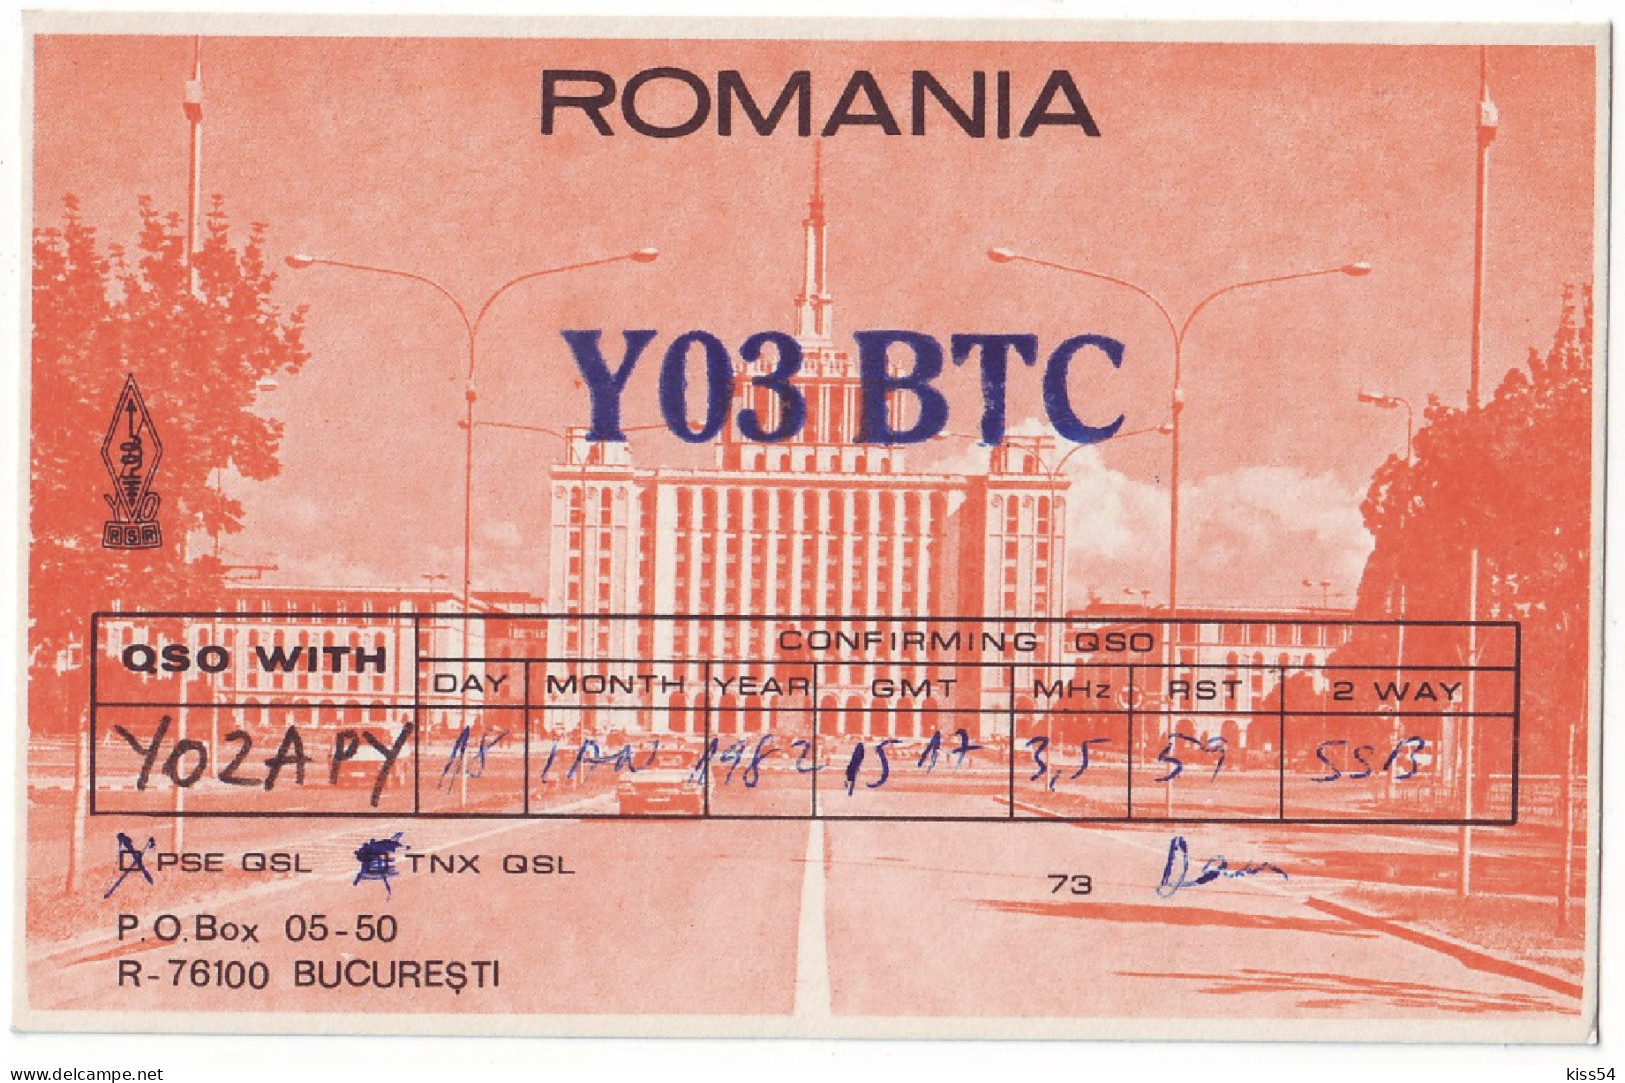 Q 41 - 181 ROMANIA - 1982 - Radio-amateur